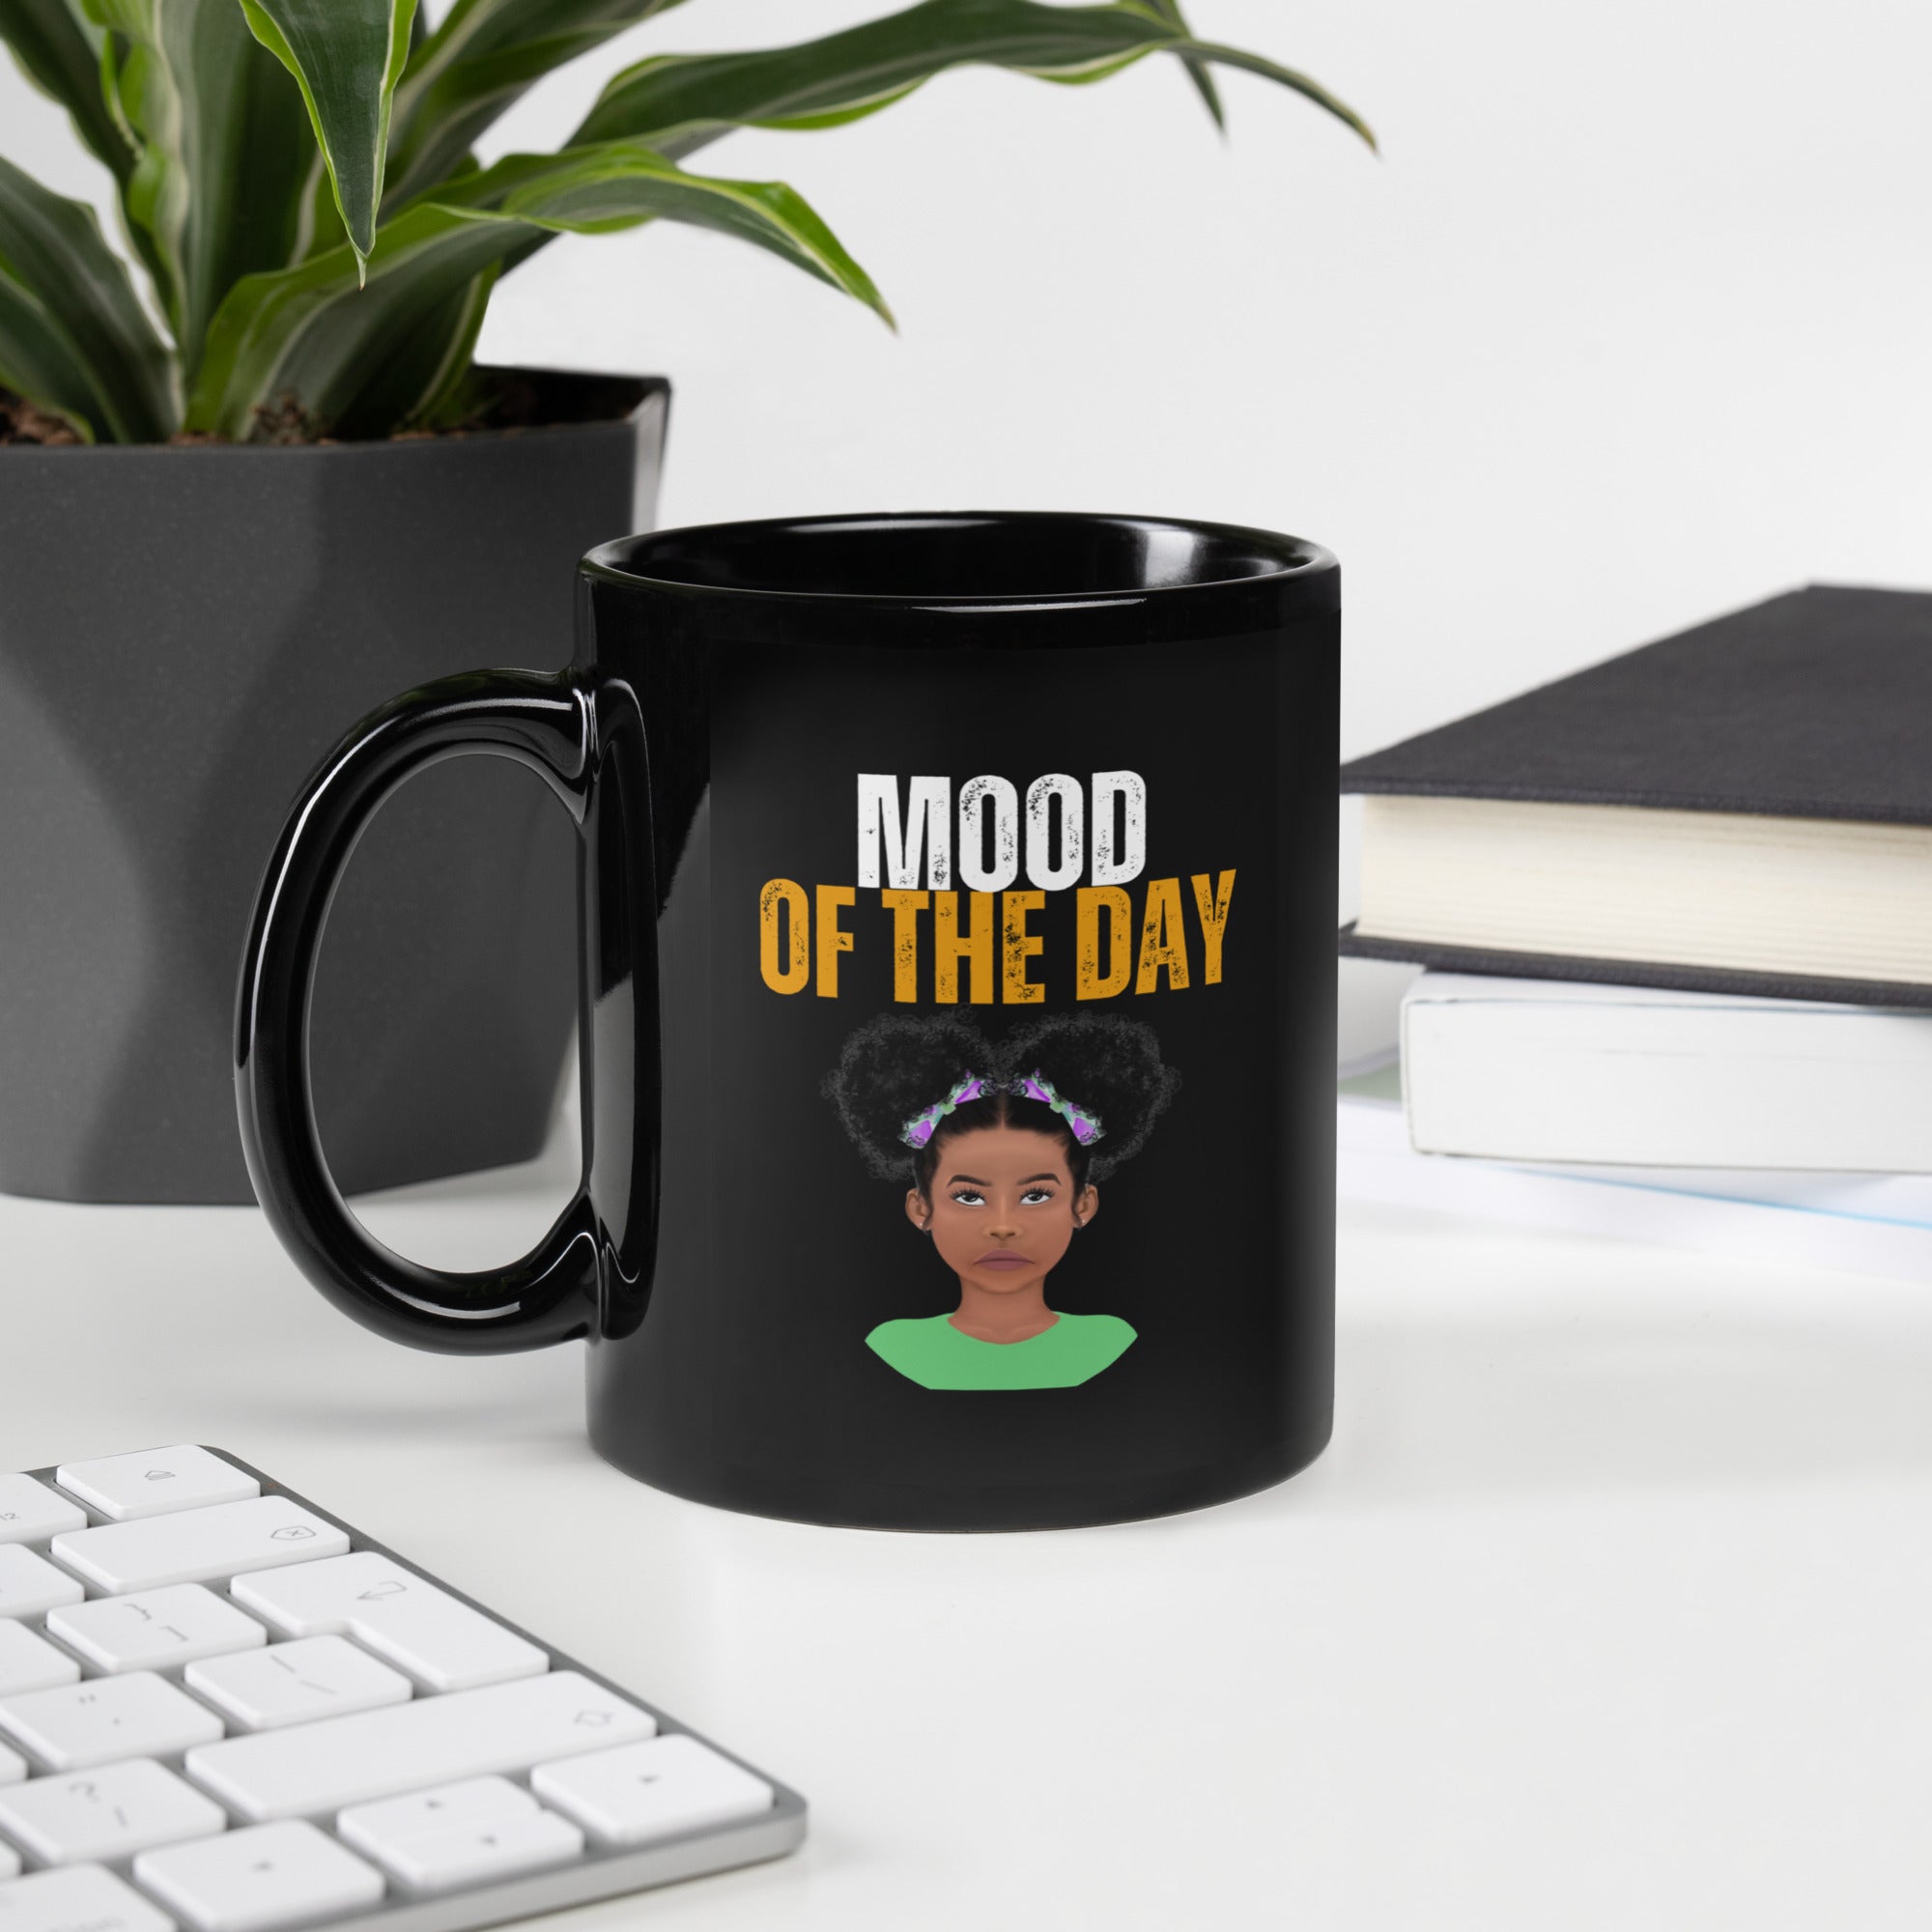 Mood of the Day Mug - Annoyed